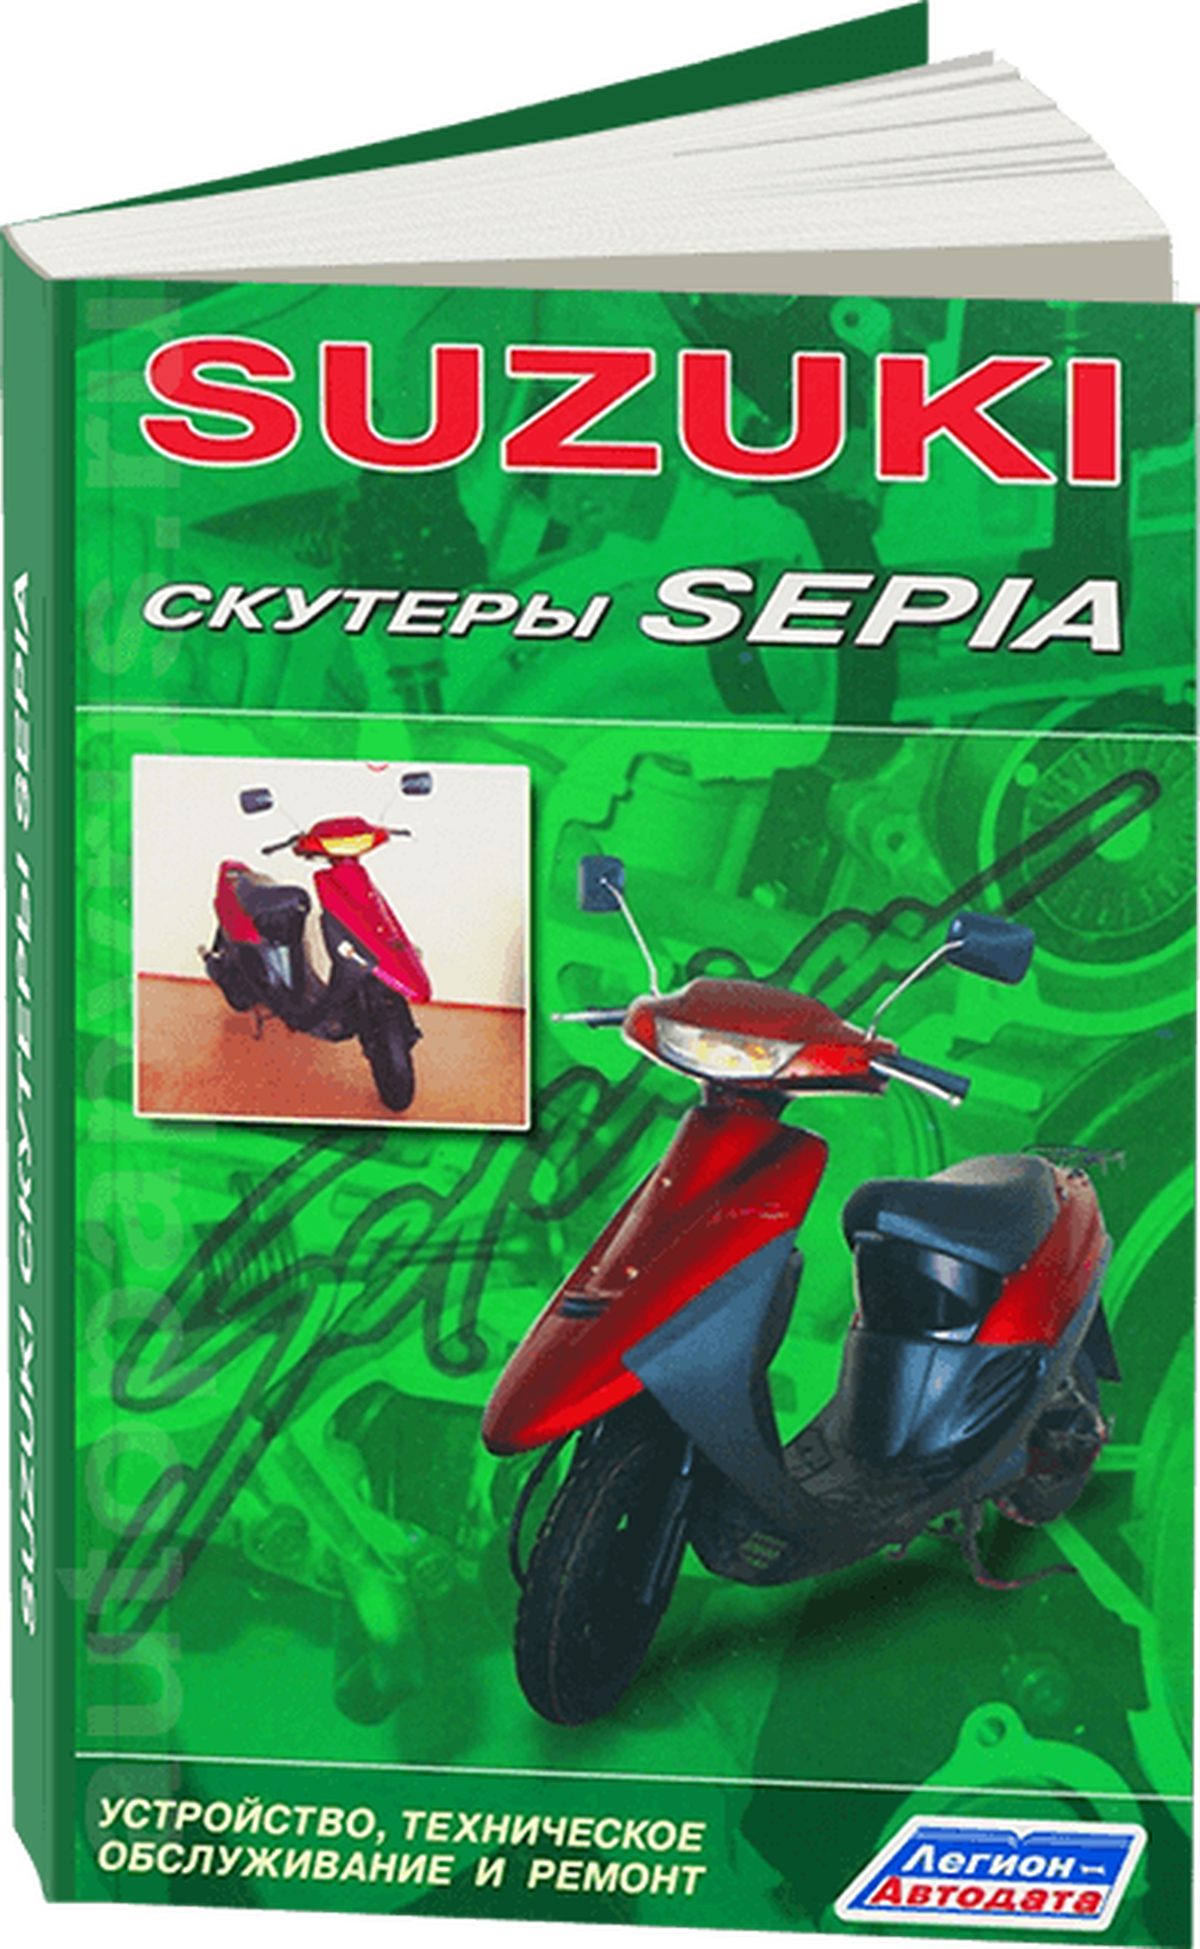 Автокнига: руководство / инструкция по ремонту и обслуживанию скутеров SUZUKI SEPIA, 978-5-88850-167-0, издательство Легион-Aвтодата